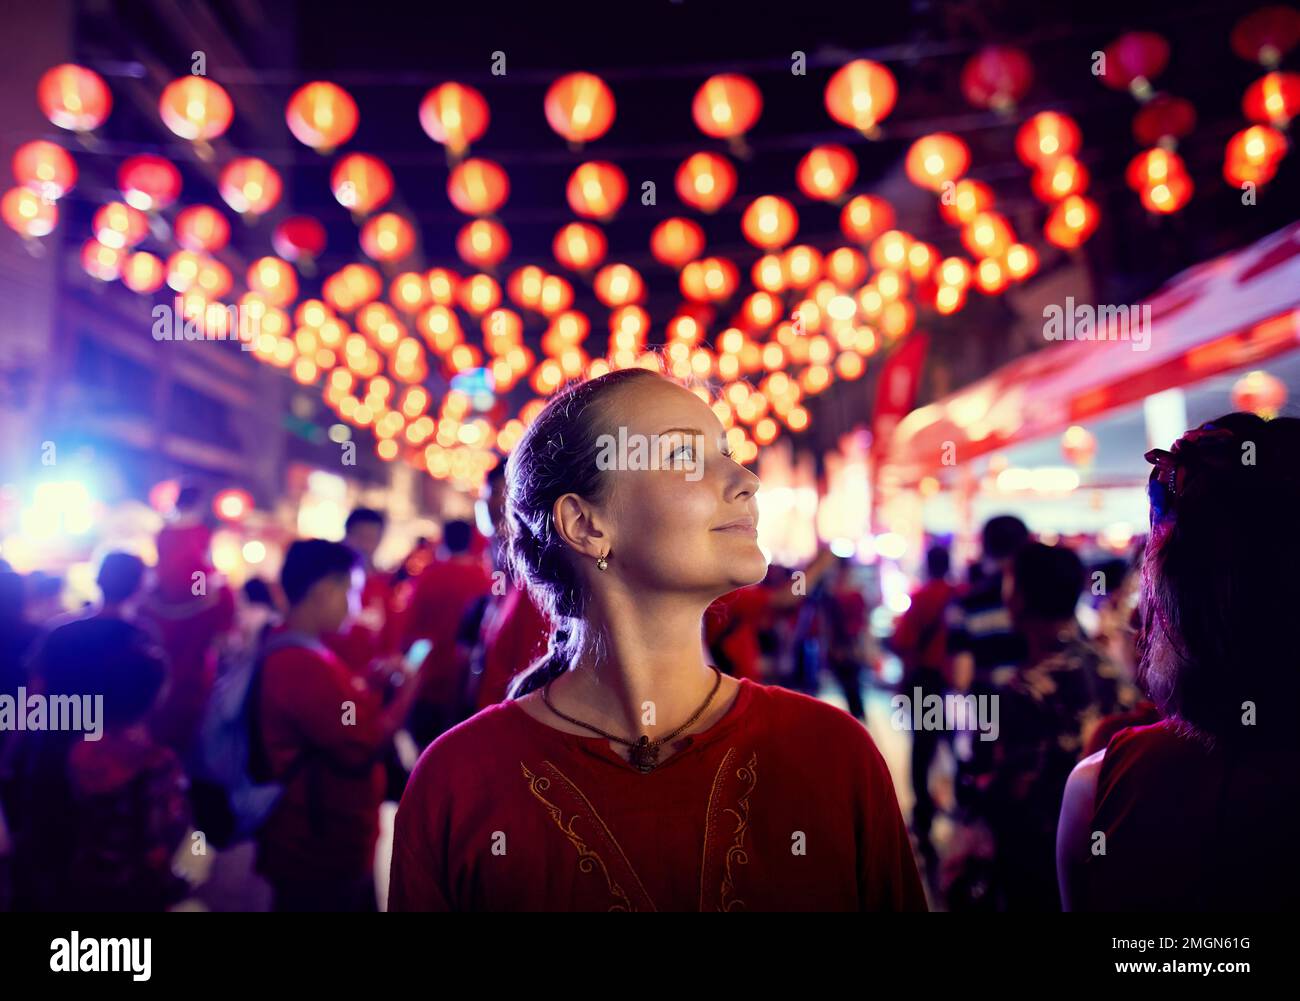 Touristin in rotem Hemd Porträt in der Nähe des Nachtmarkts mit roten Laternen für das chinesische Neujahr in Bangkok Chinatown in Thailand Stockfoto